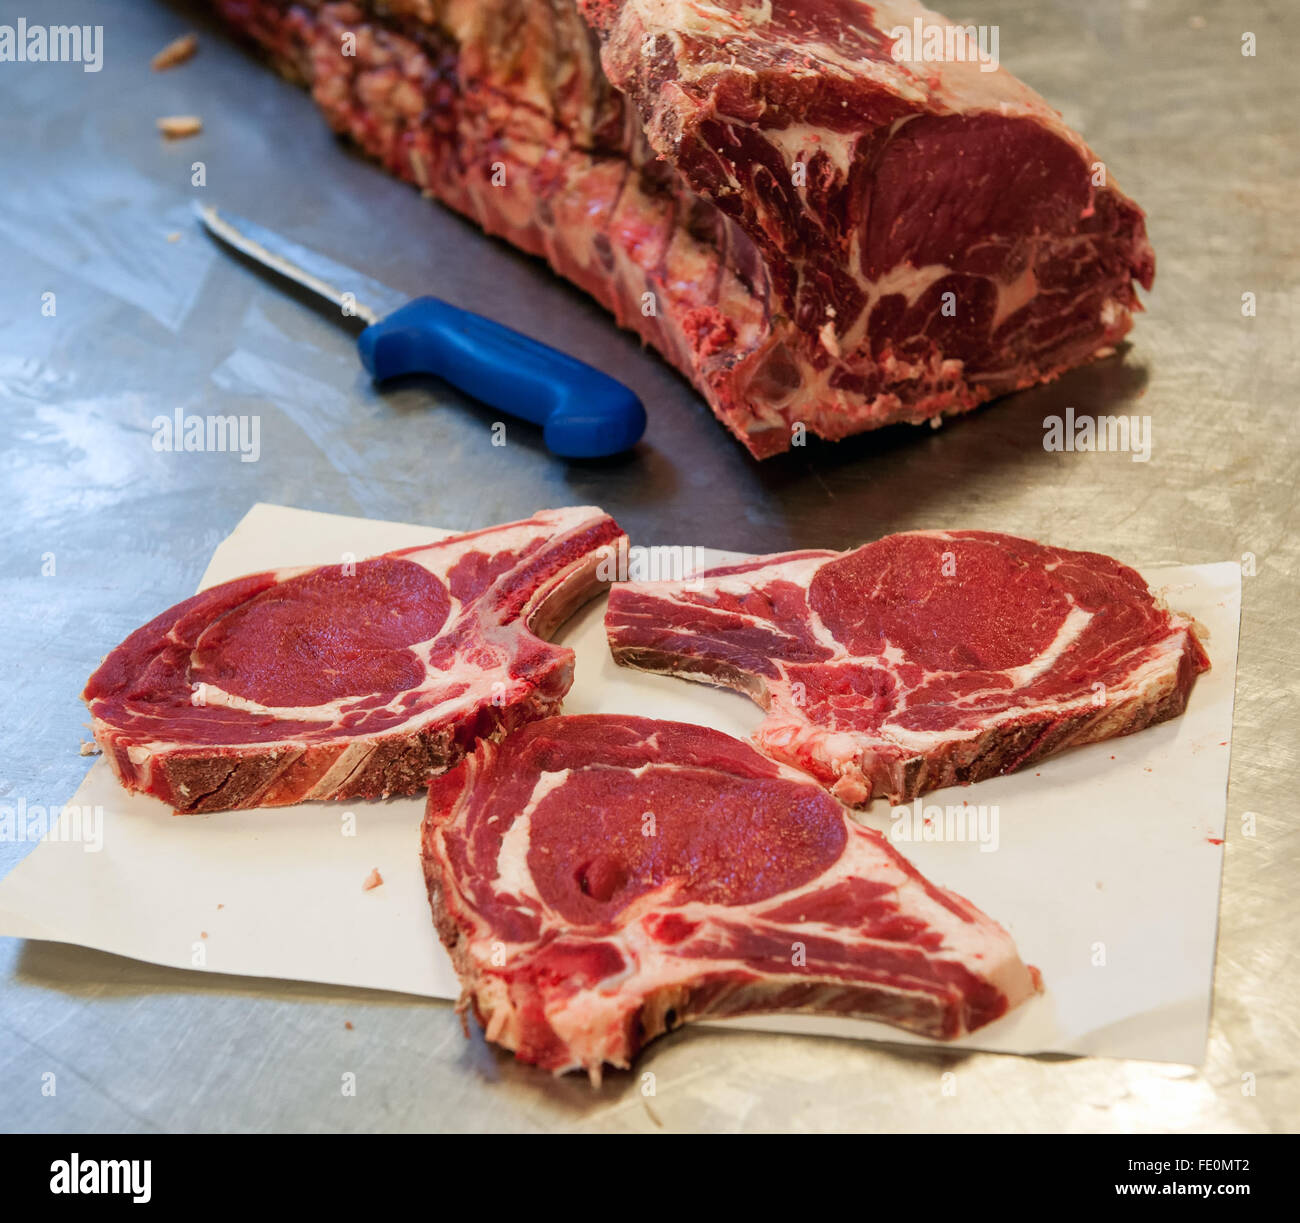 Drei Scheiben von rohem Rib-Eye Steak über Metzger Papierblatt neben Messer und Fleisch Abschnitt auf Metall-Tisch Stockfoto